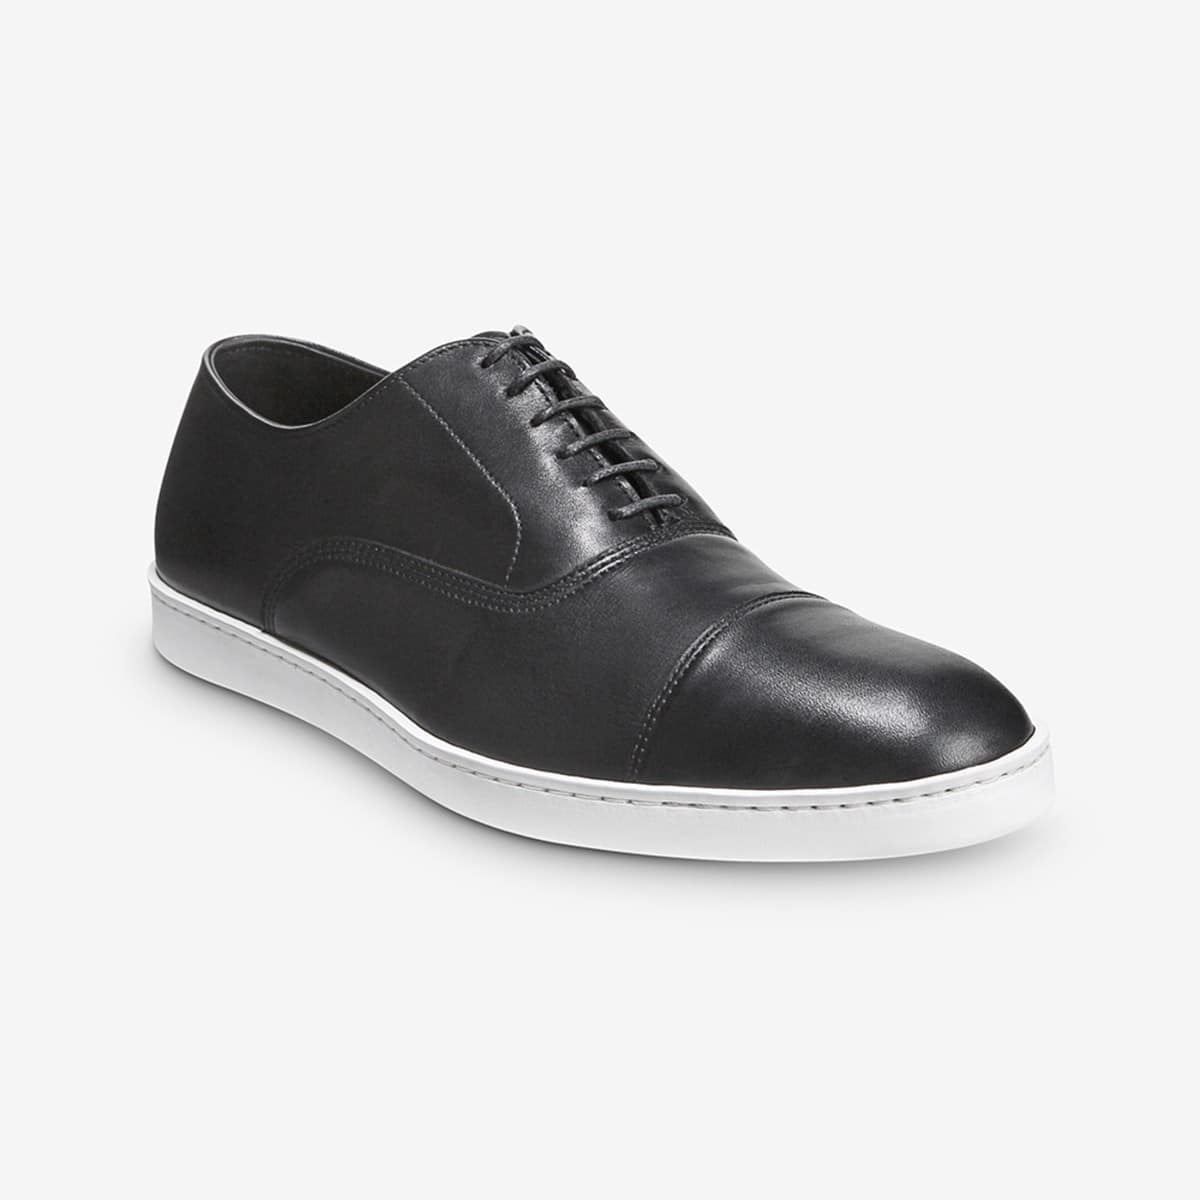 Allen Edmonds Mens Derby Dress Shoe Black Cap Toe Leather Margate 9.5 D  Lace Up | eBay